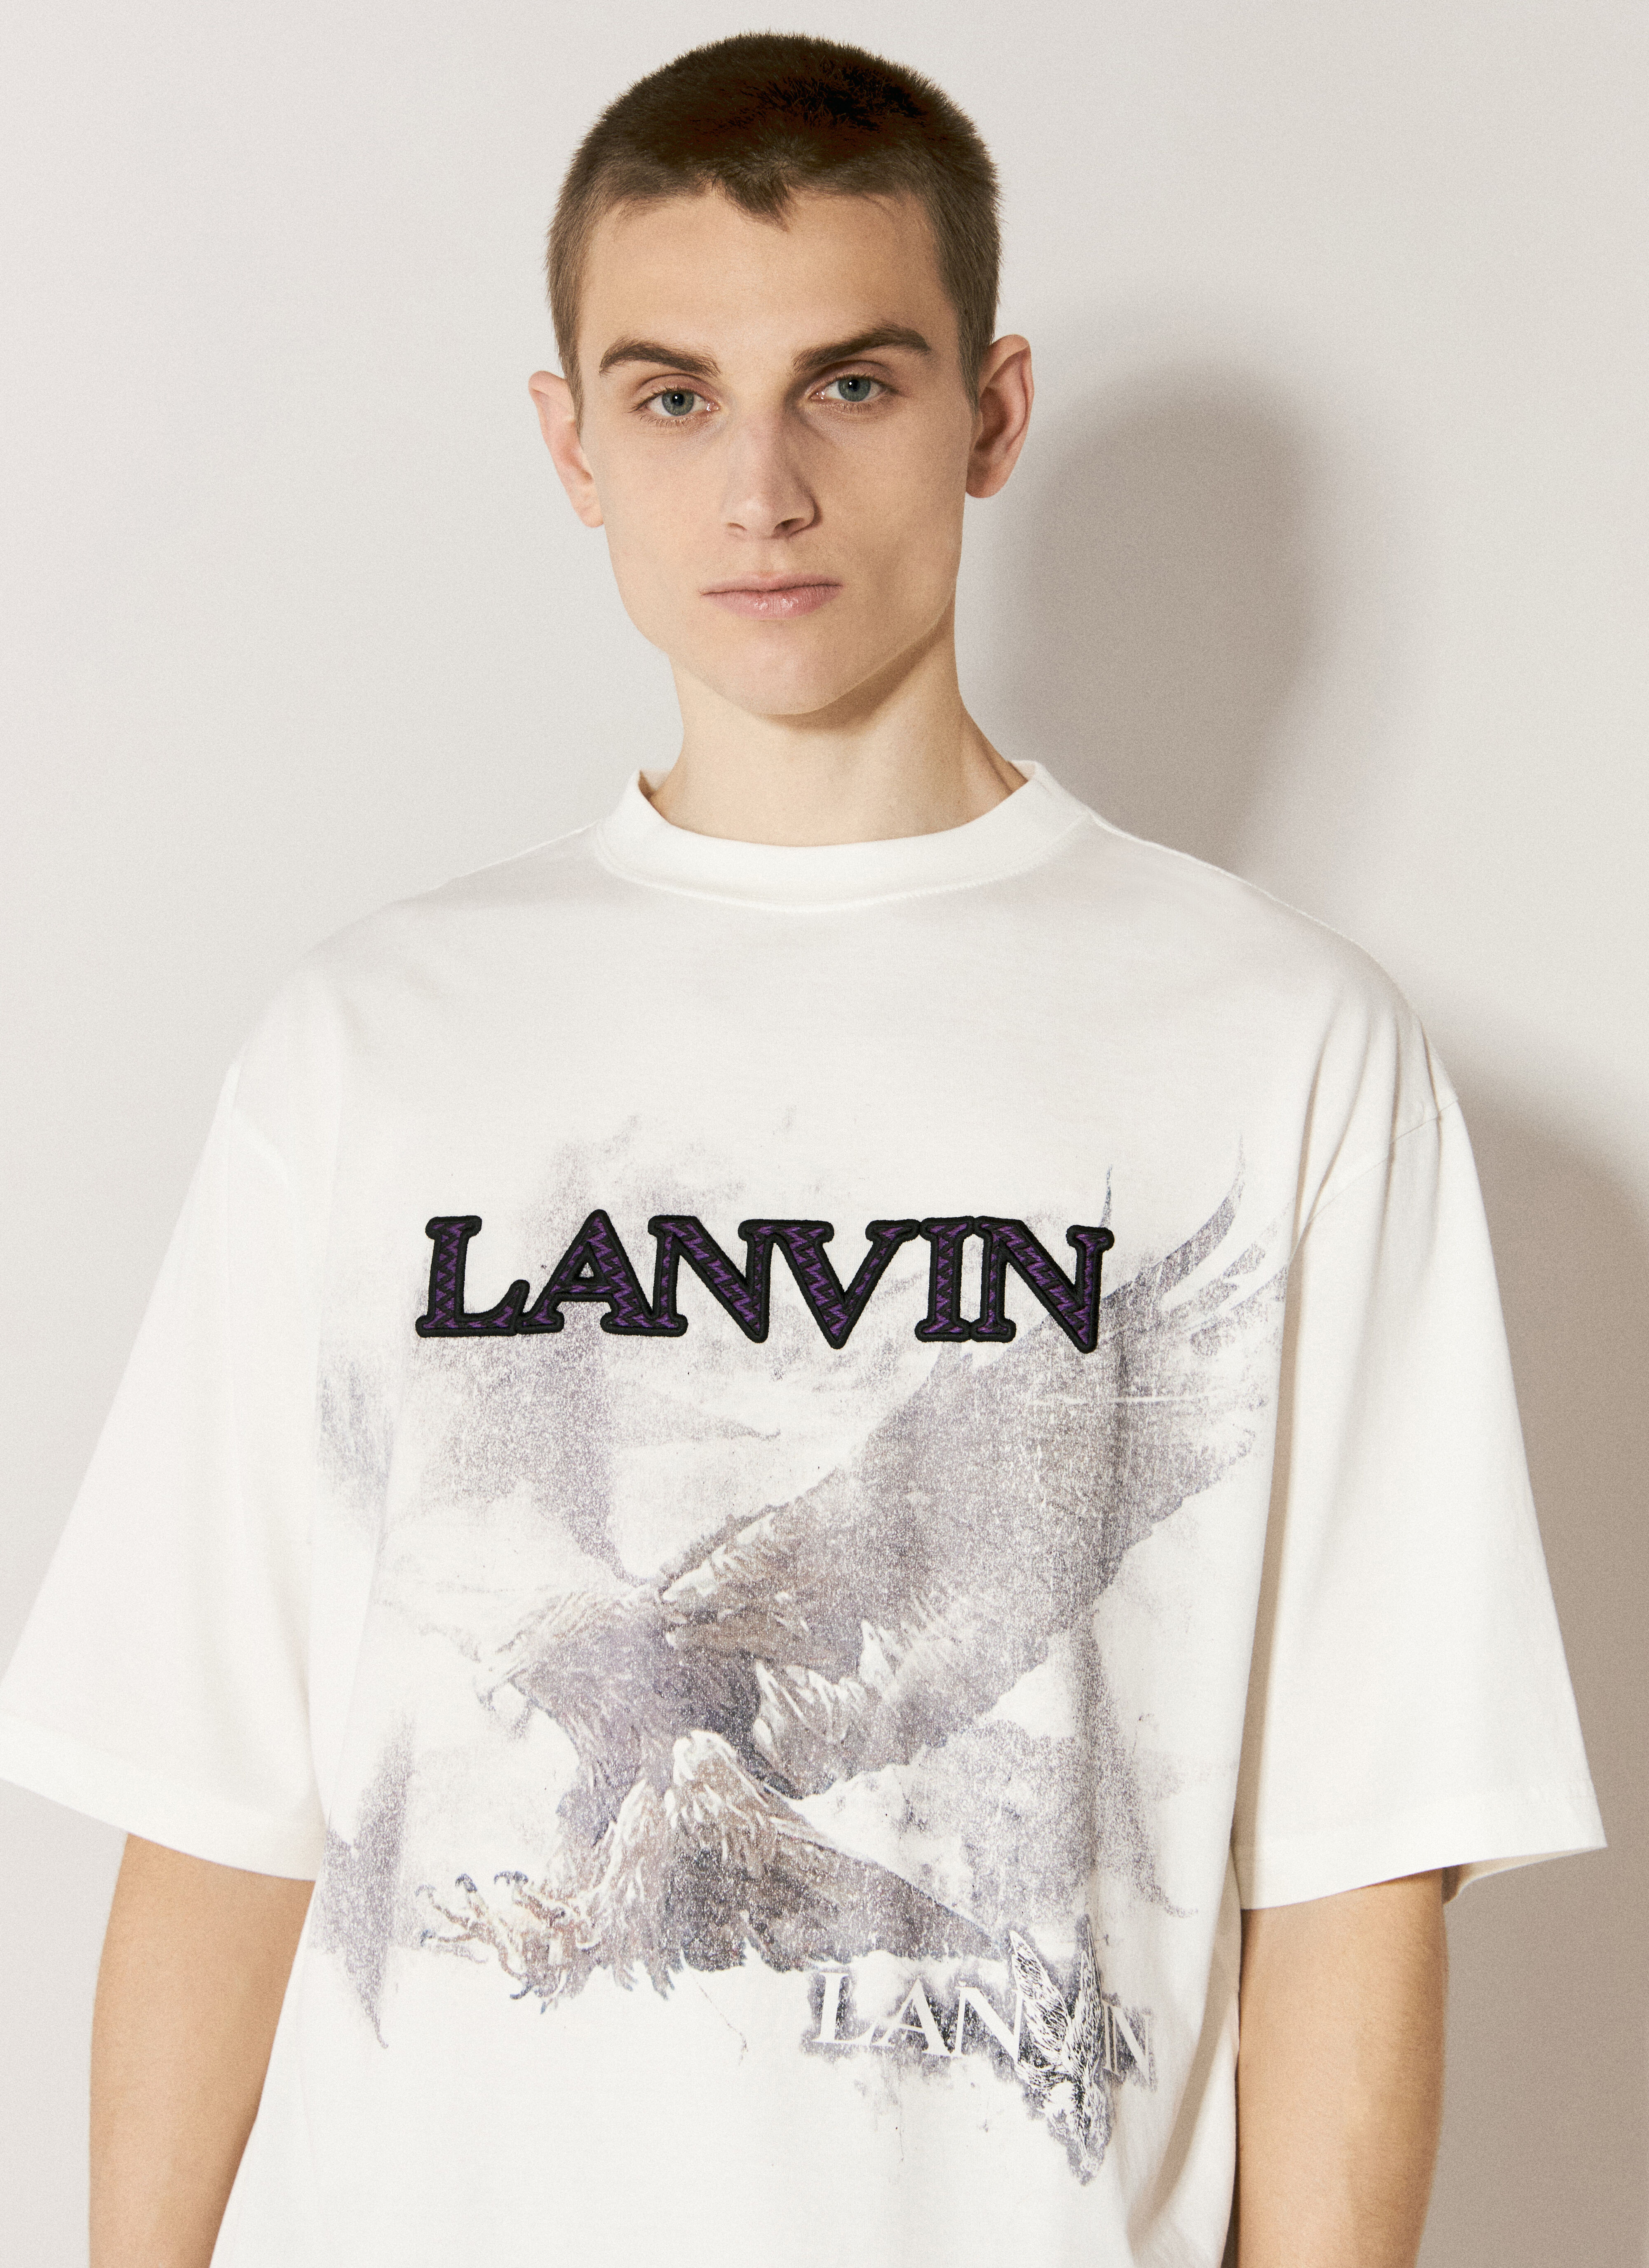 Lanvin Logo Print T-Shirt White lnv0155008